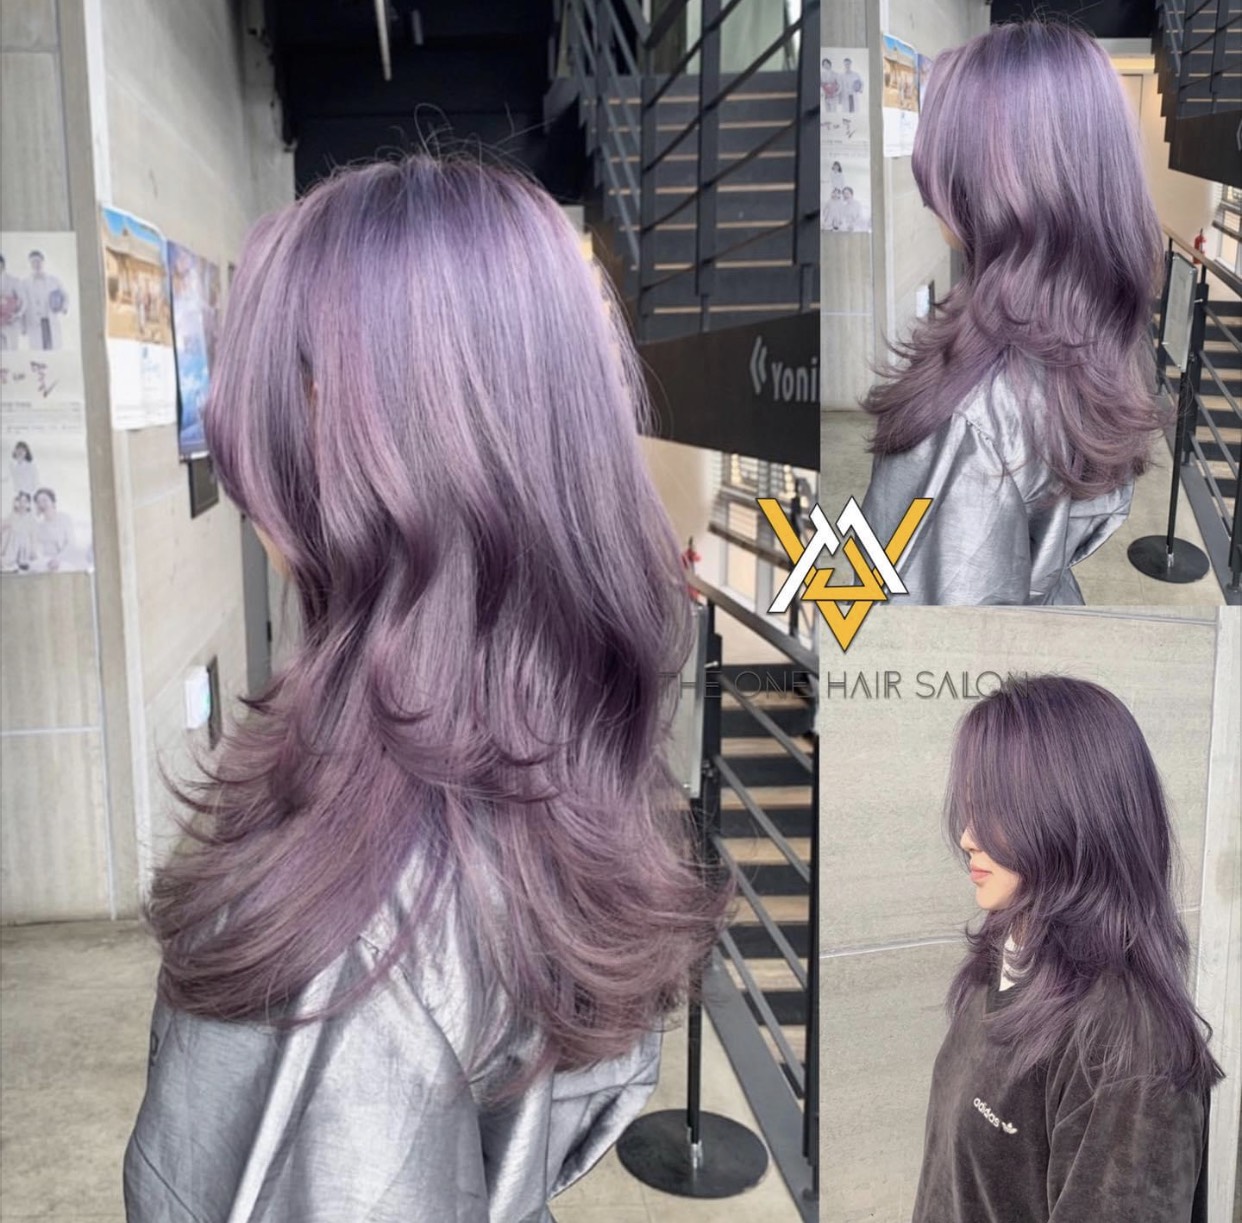 Bạn muốn thử với một mái tóc mới độc đáo và dịu dàng? Tóc màu tím baby violet sẽ là sự lựa chọn hoàn hảo! Không chỉ trẻ trung, nữ tính, tóc màu này còn giúp tôn lên nét đẹp ngọt ngào của bạn. Nhấn vào ảnh để khám phá thêm những kiểu tóc tuyệt vời với tóc màu tím baby violet!